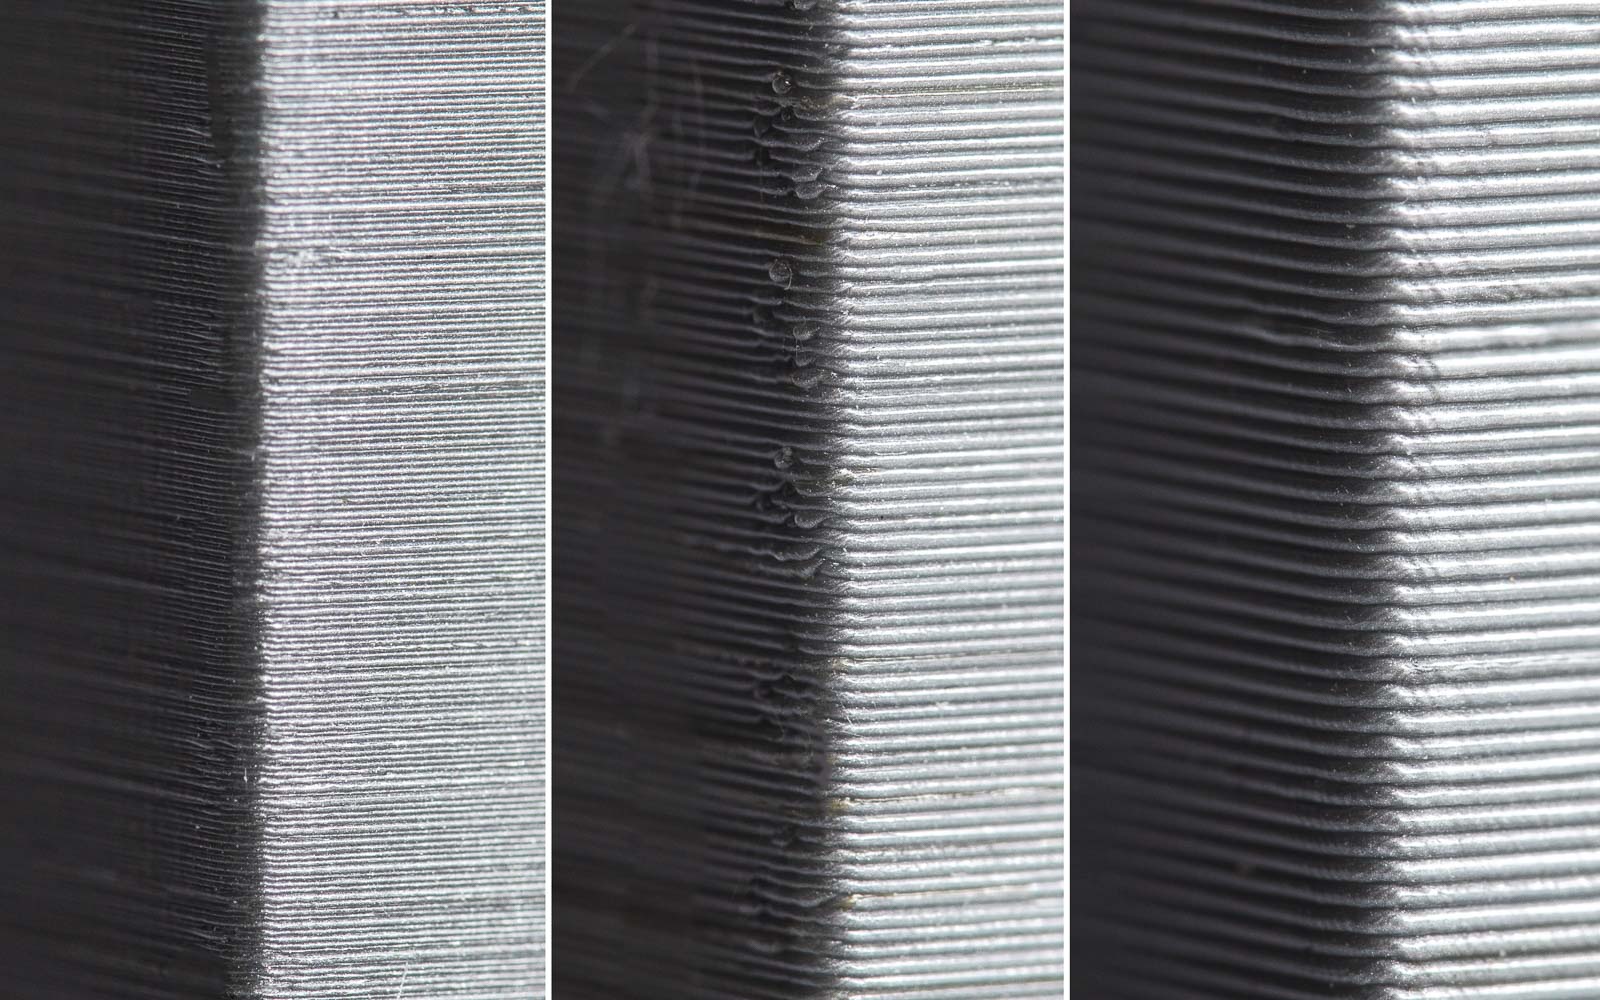 لایه های قطعاتی که با پرینتر سه بعدی ساخته می شوند از نزدیک قابل مشاهده هستند.